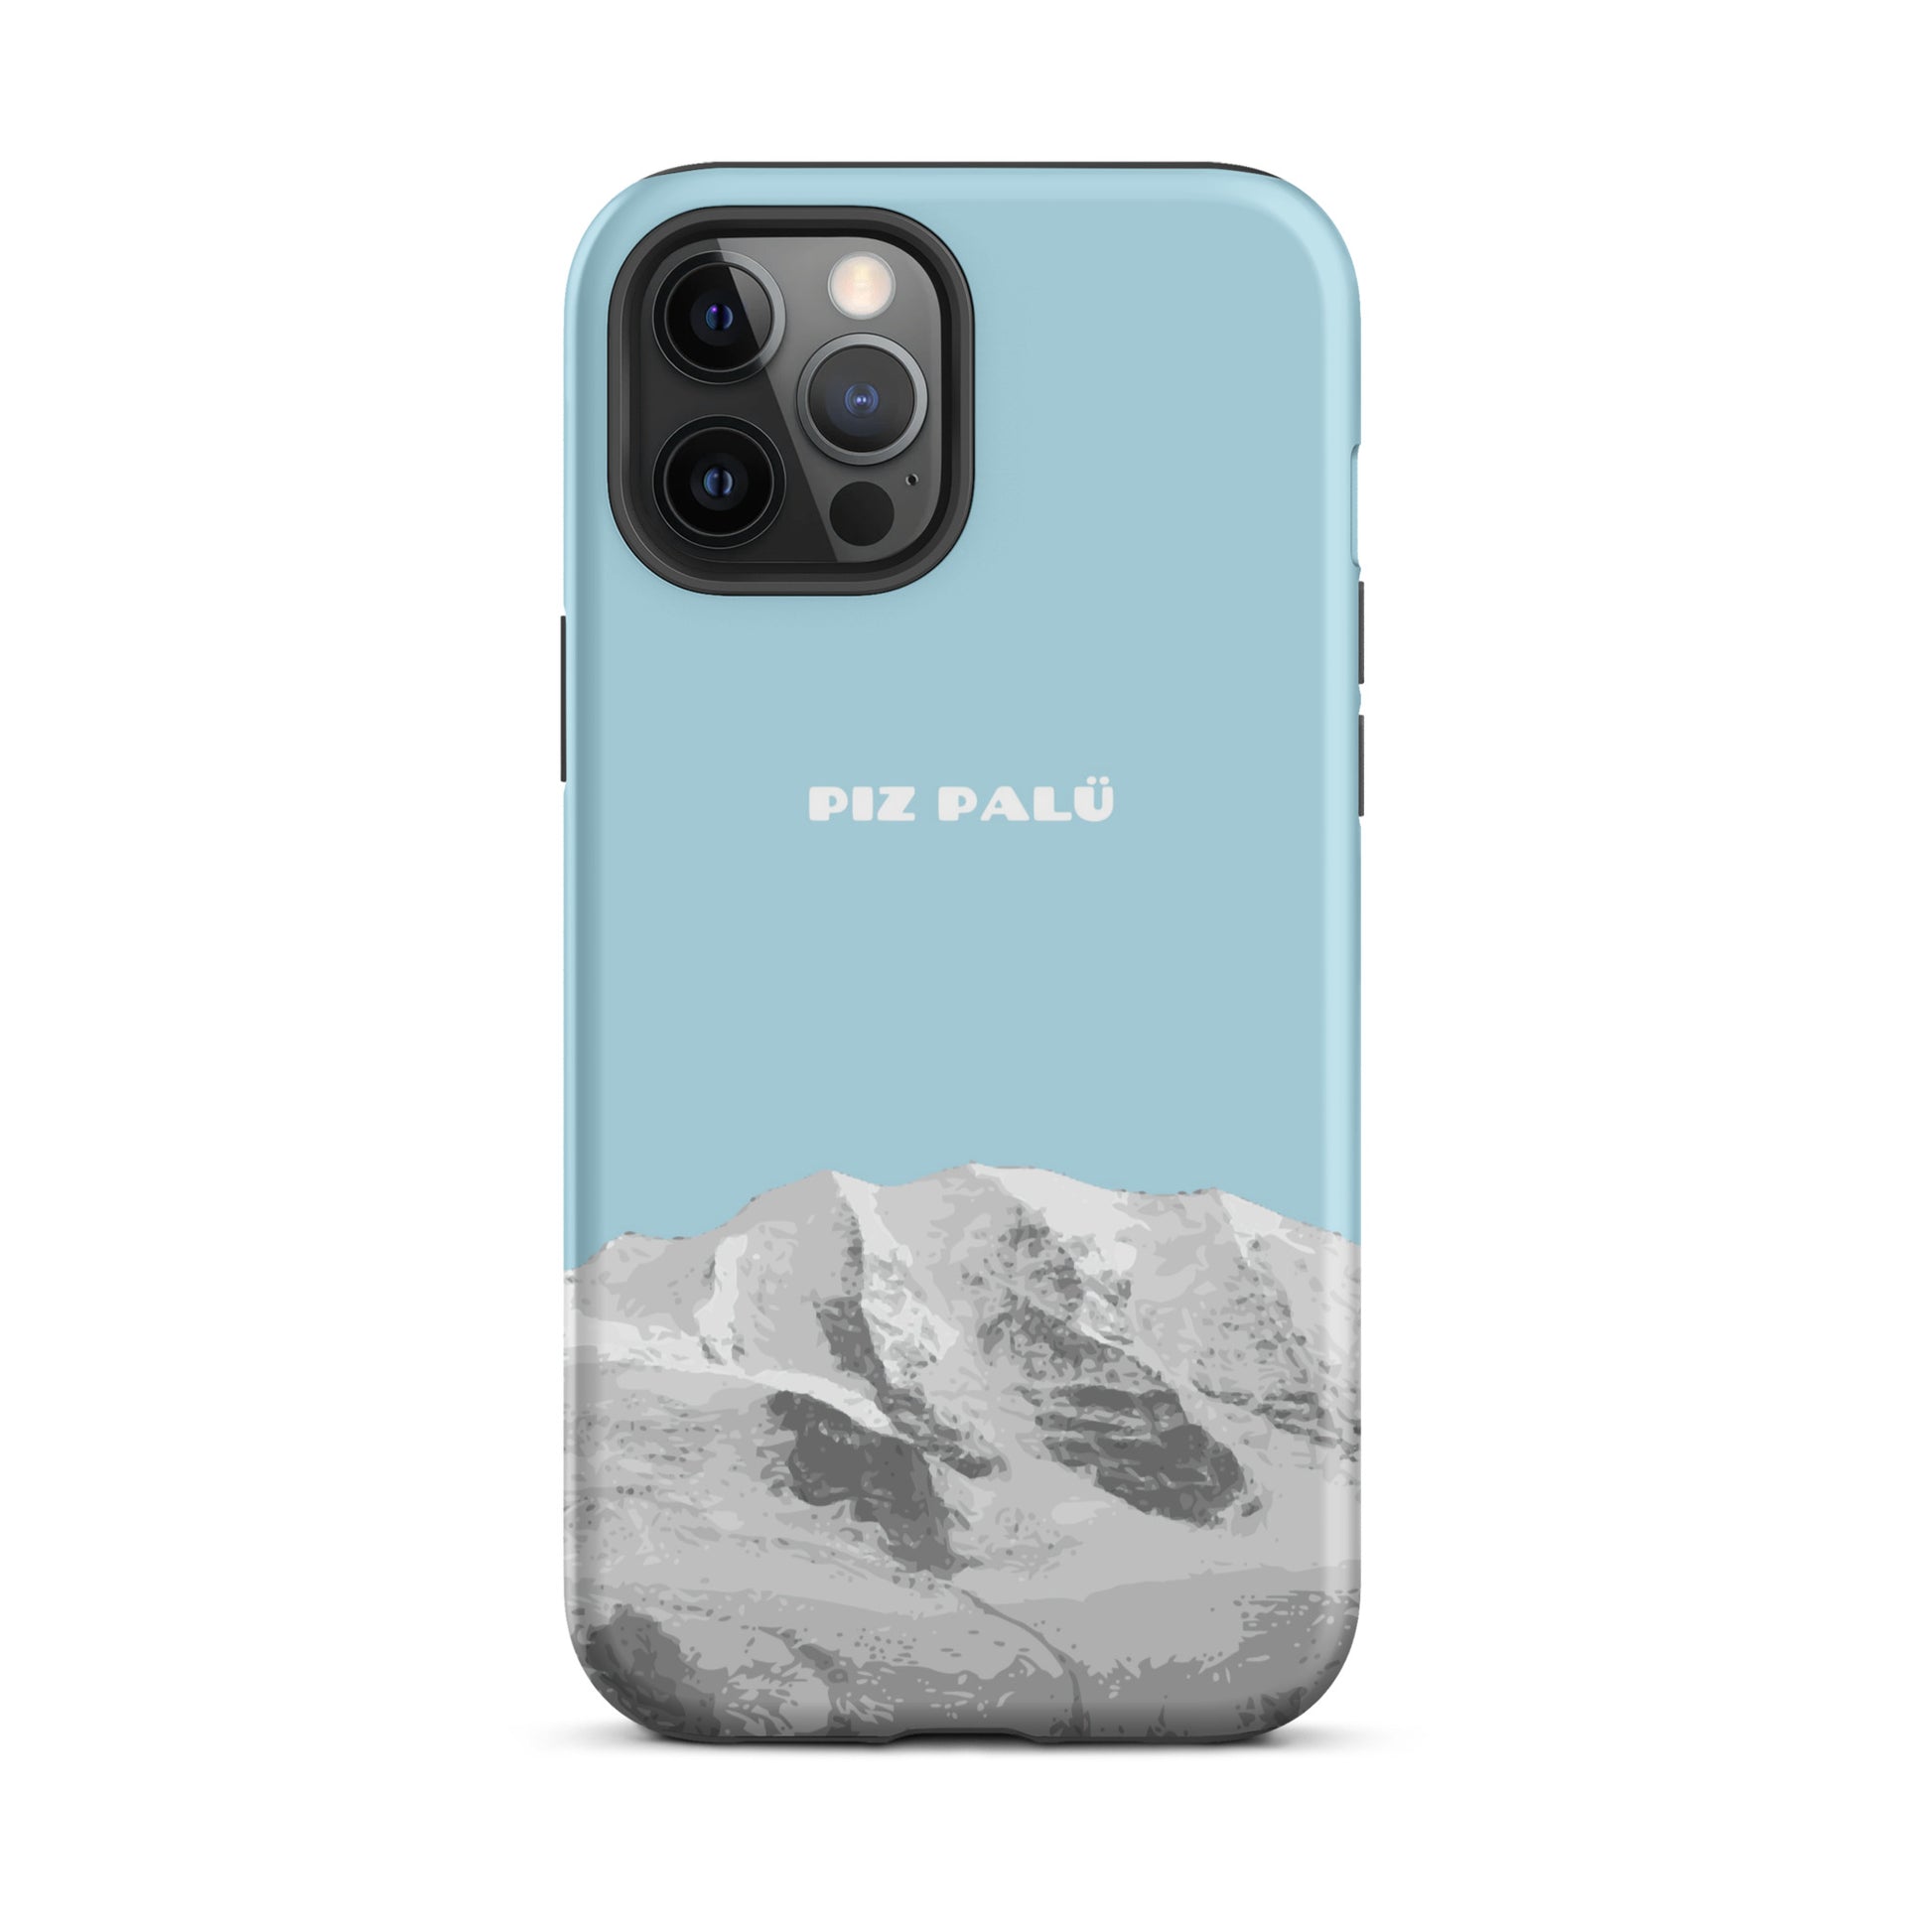 Hülle für das iPhone 12 Pro Max von Apple in der Farbe Hellblau, dass den Piz Palü in Graubünden zeigt.